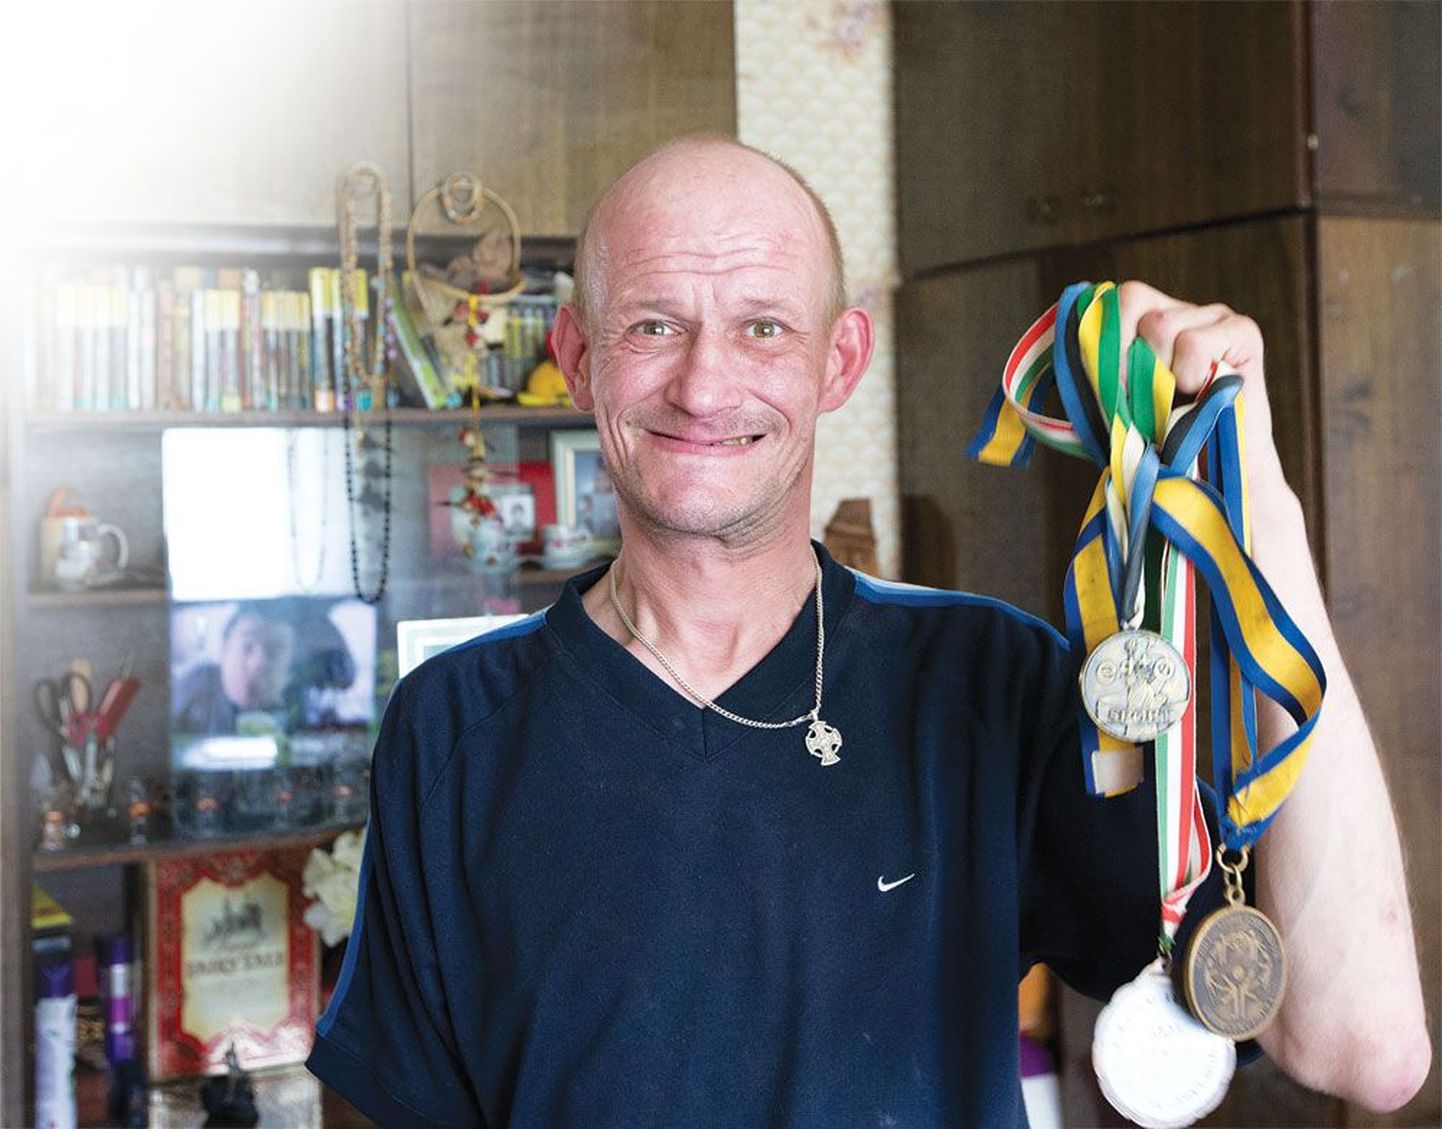 Андрей Головань когда-то был спортсменом эстонской сборной. 
Сегодня от той жизни остались лишь воспоминания и медали.